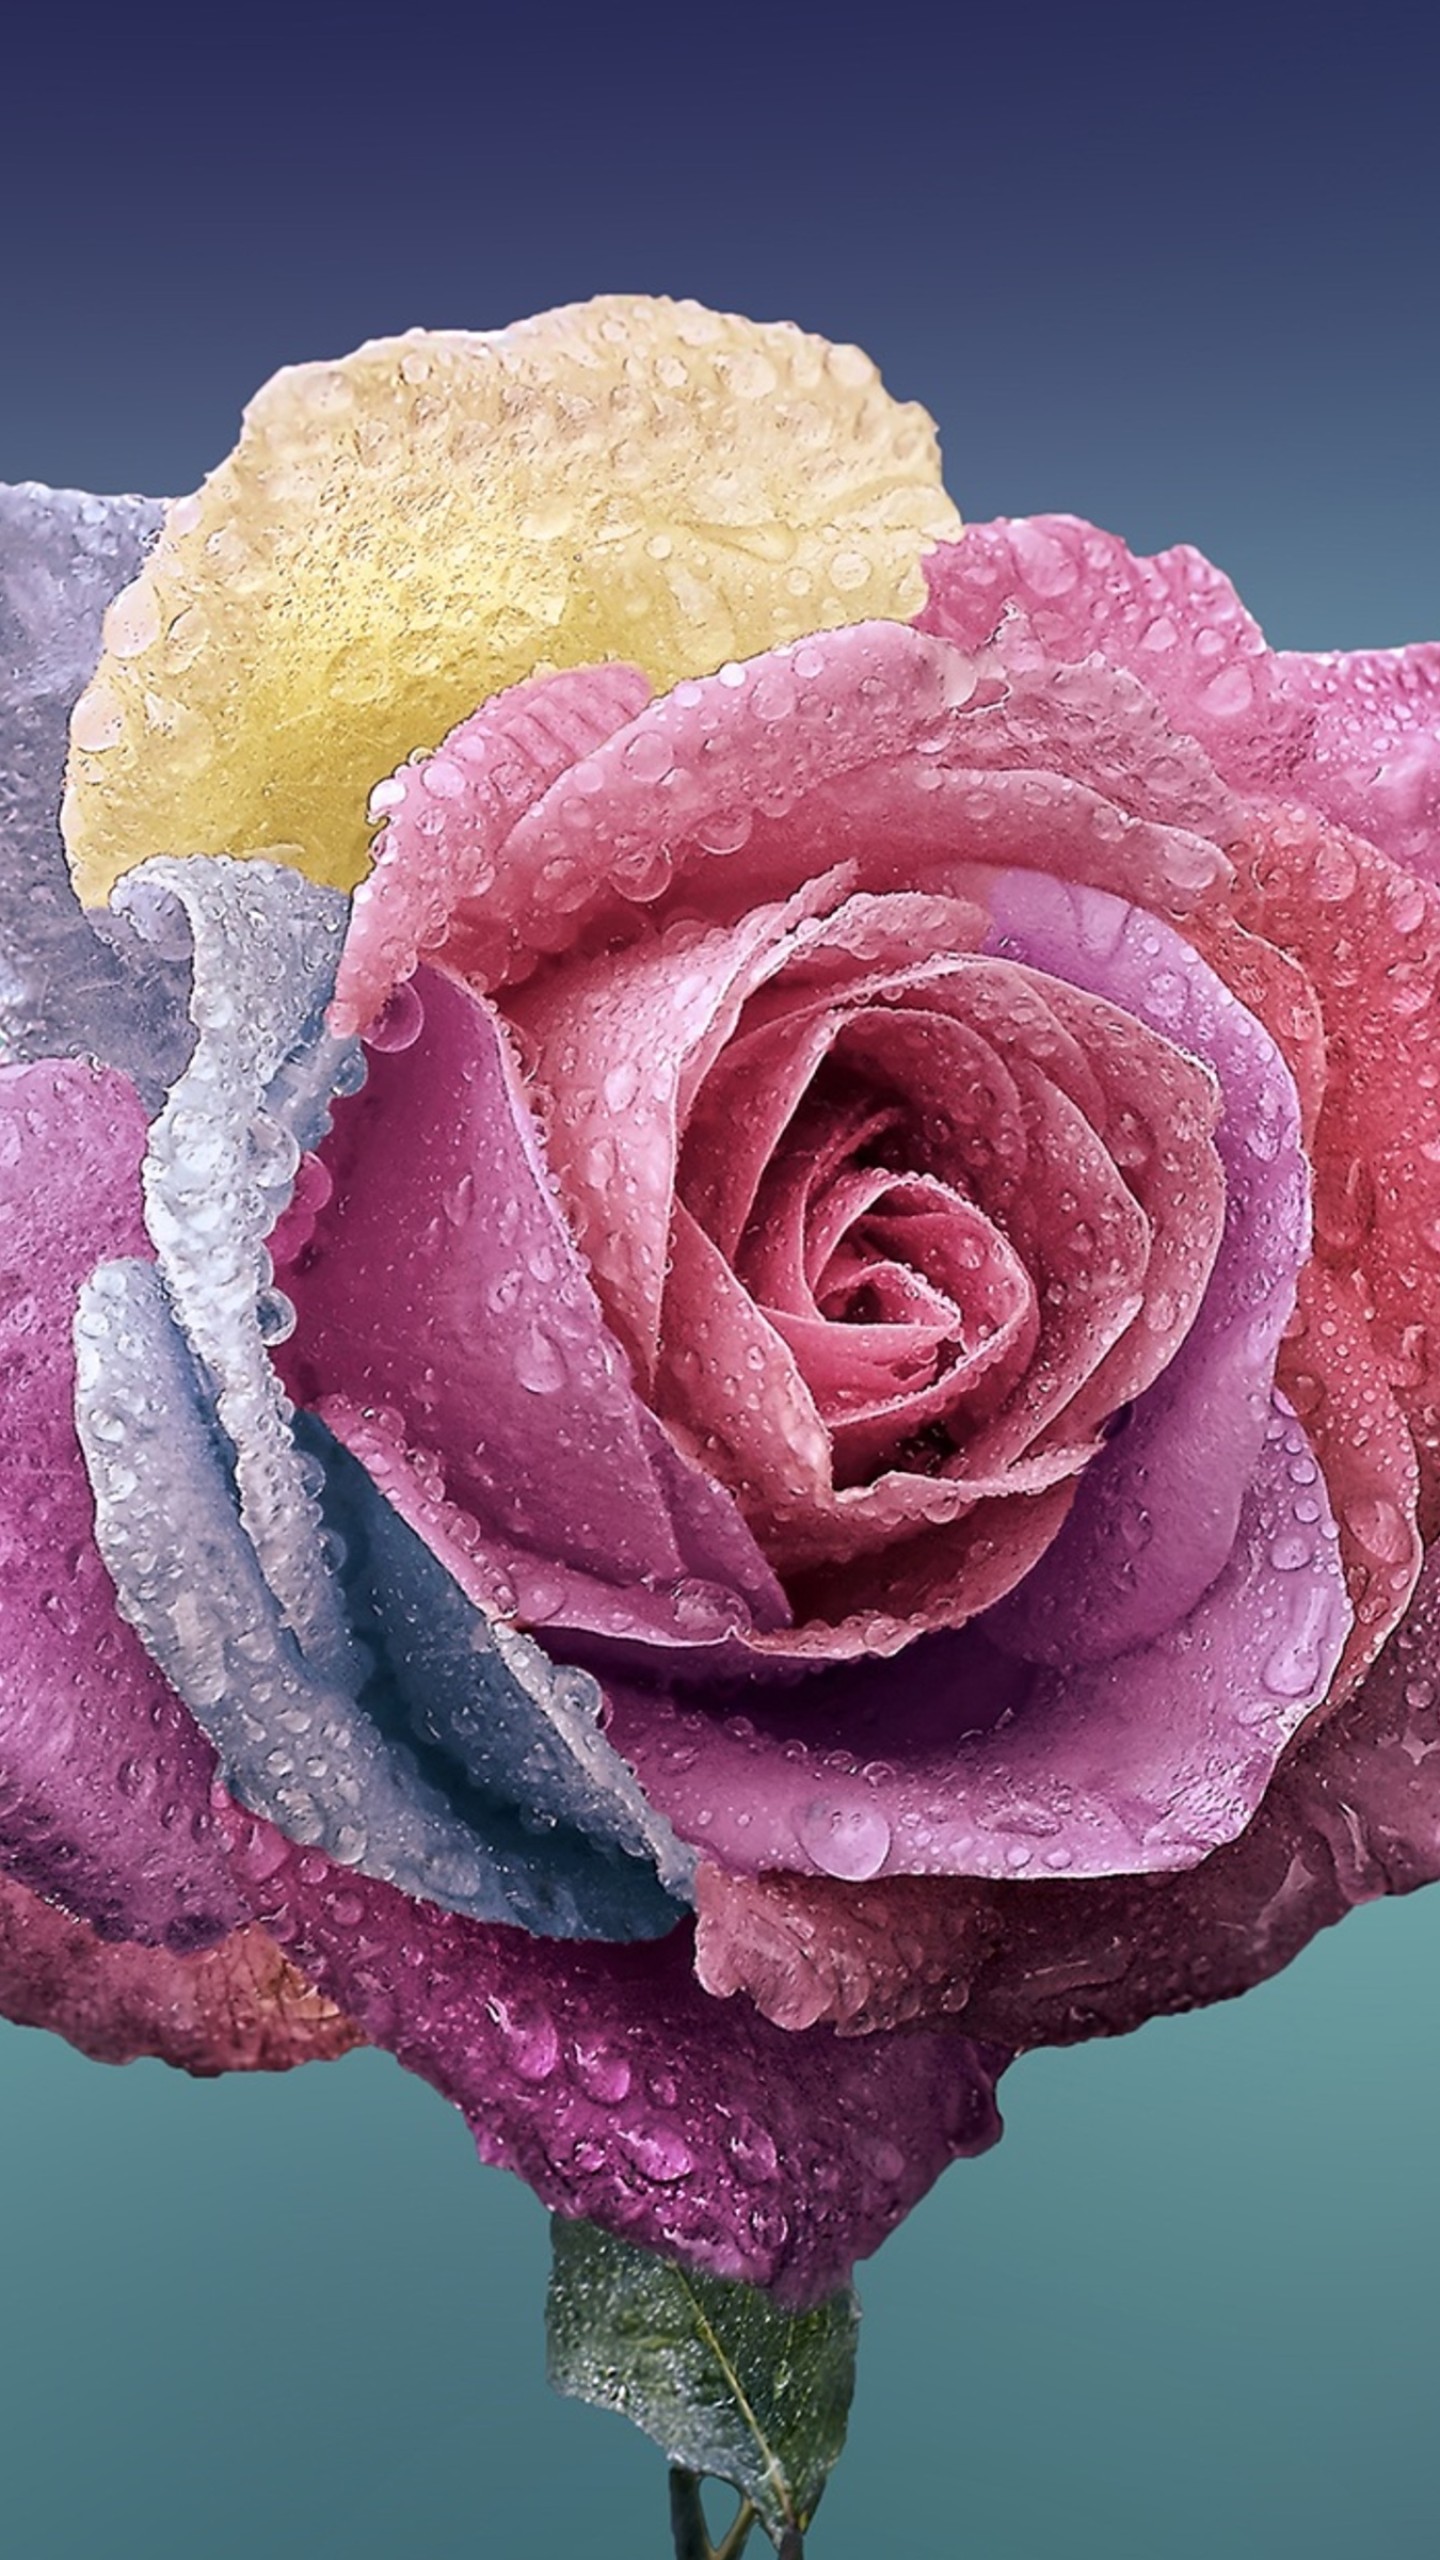  Wallpaper  rose flower  4k  Nature 16727